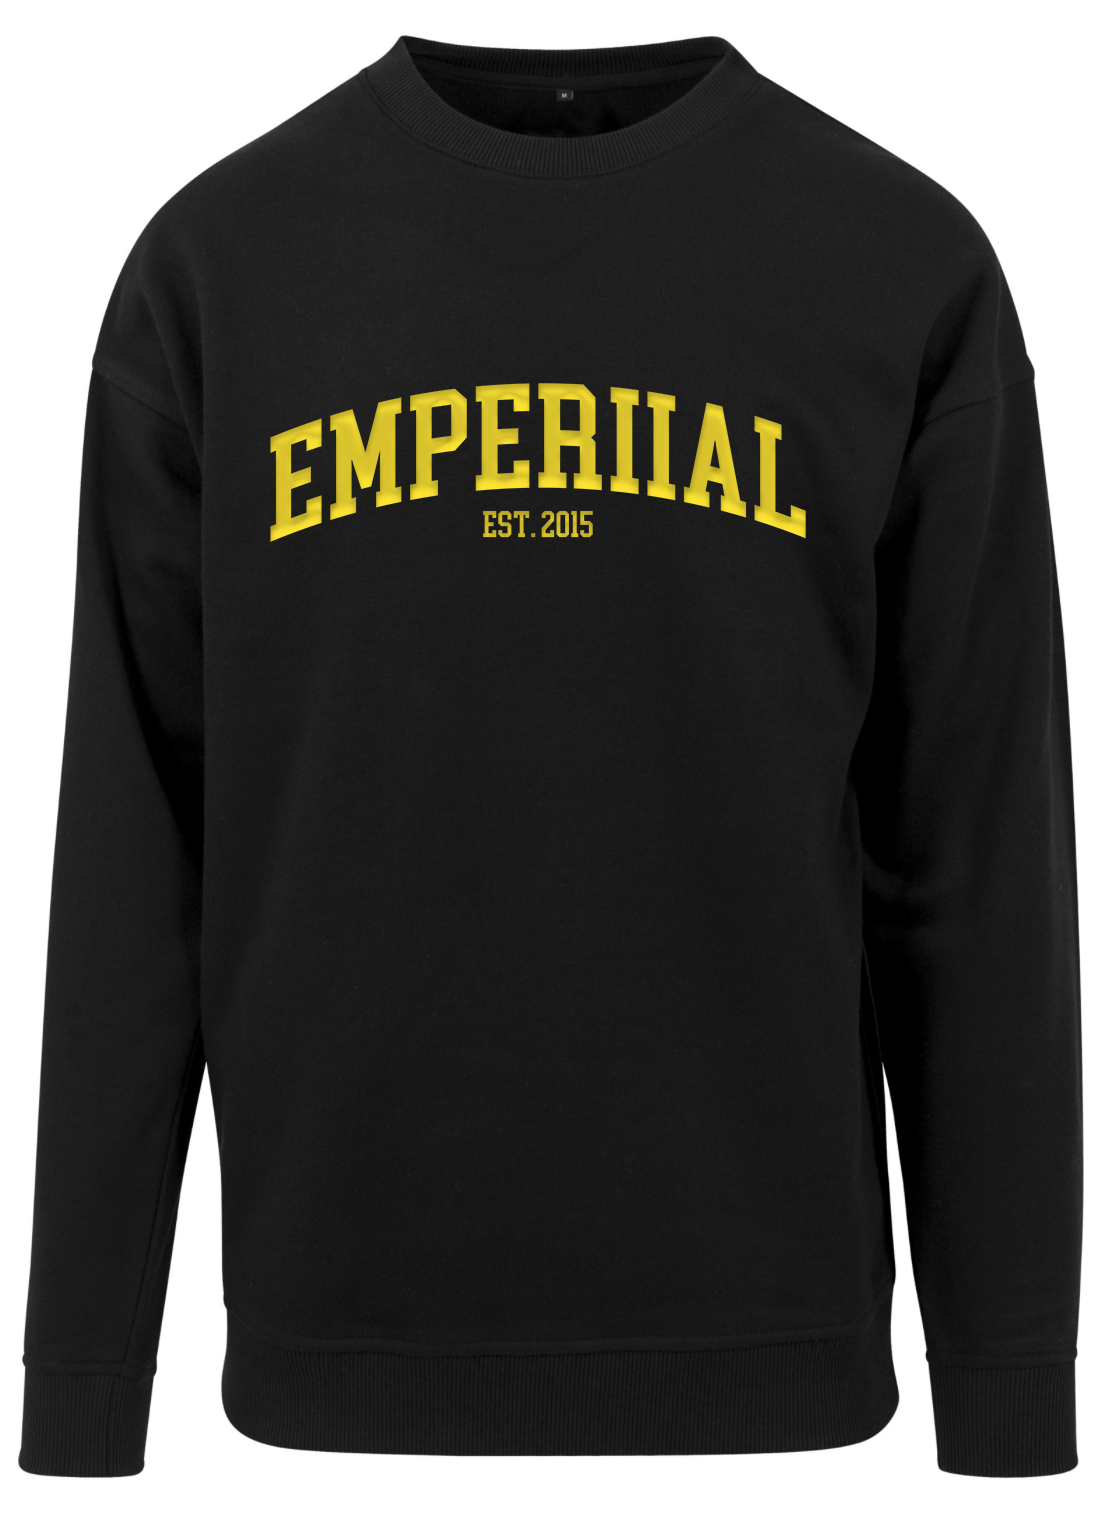 Emperiial - Schriftzug - Sweatshirt 